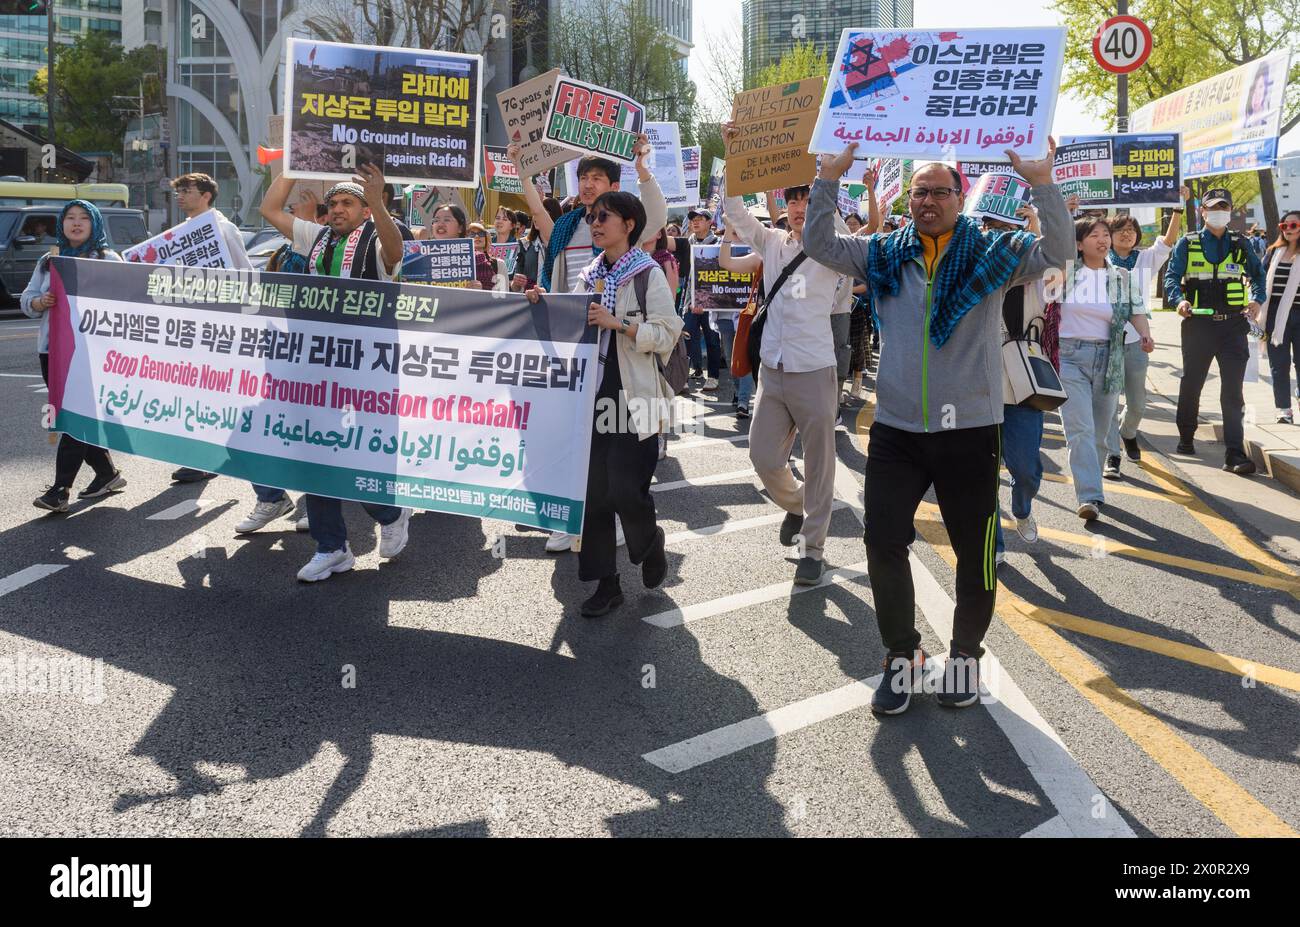 Seúl, Corea del Sur. 13 de abril de 2024. Los partidarios pro-palestinos sostienen una pancarta y pancartas durante una protesta en el centro de Seúl. ¡Los partidarios pro-palestinos marcharon en el centro de Seúl pidiendo el fin del genocidio ahora! ¡Y ninguna invasión terrestre de Rafah!. Crédito: SOPA Images Limited/Alamy Live News Foto de stock